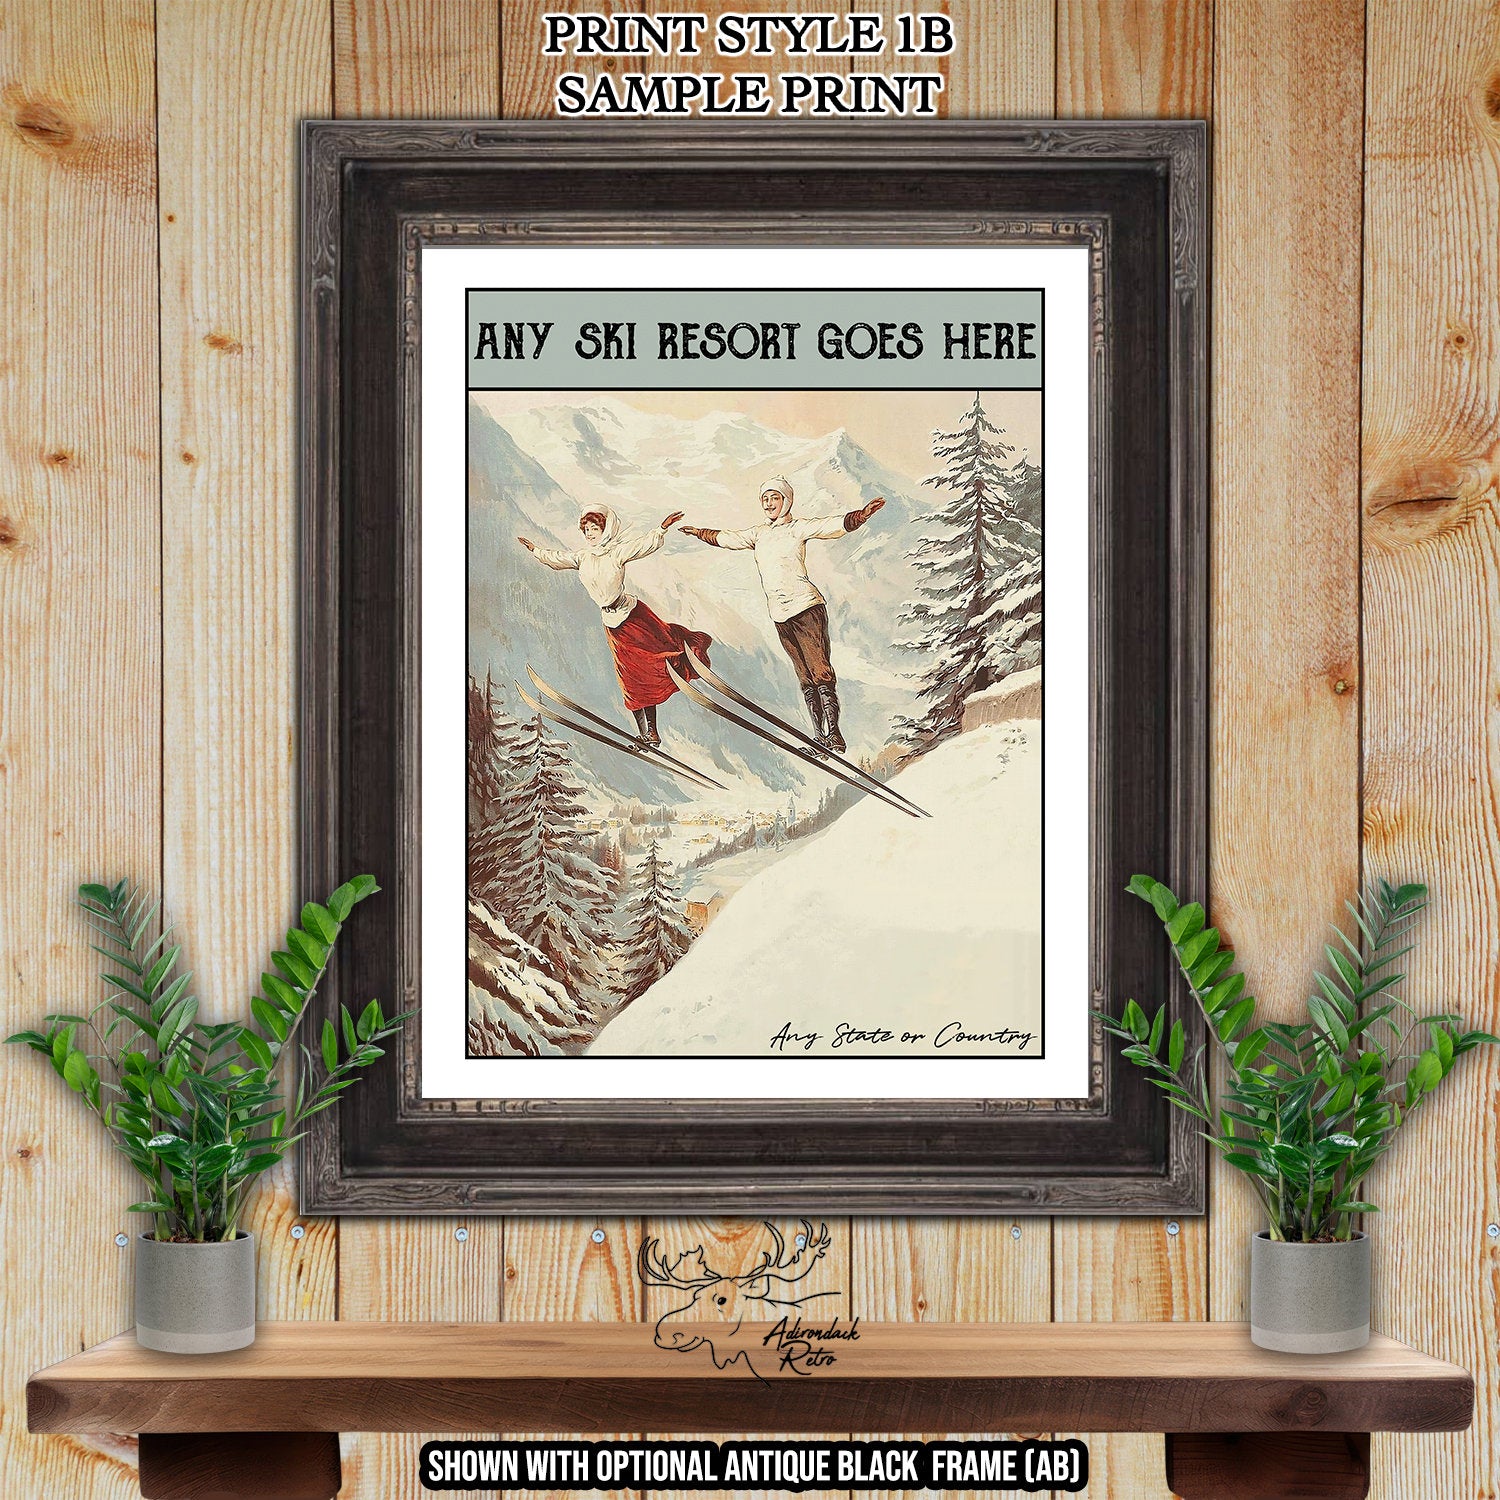 Zweisimmen Switzerland Retro Ski Resort Art Print